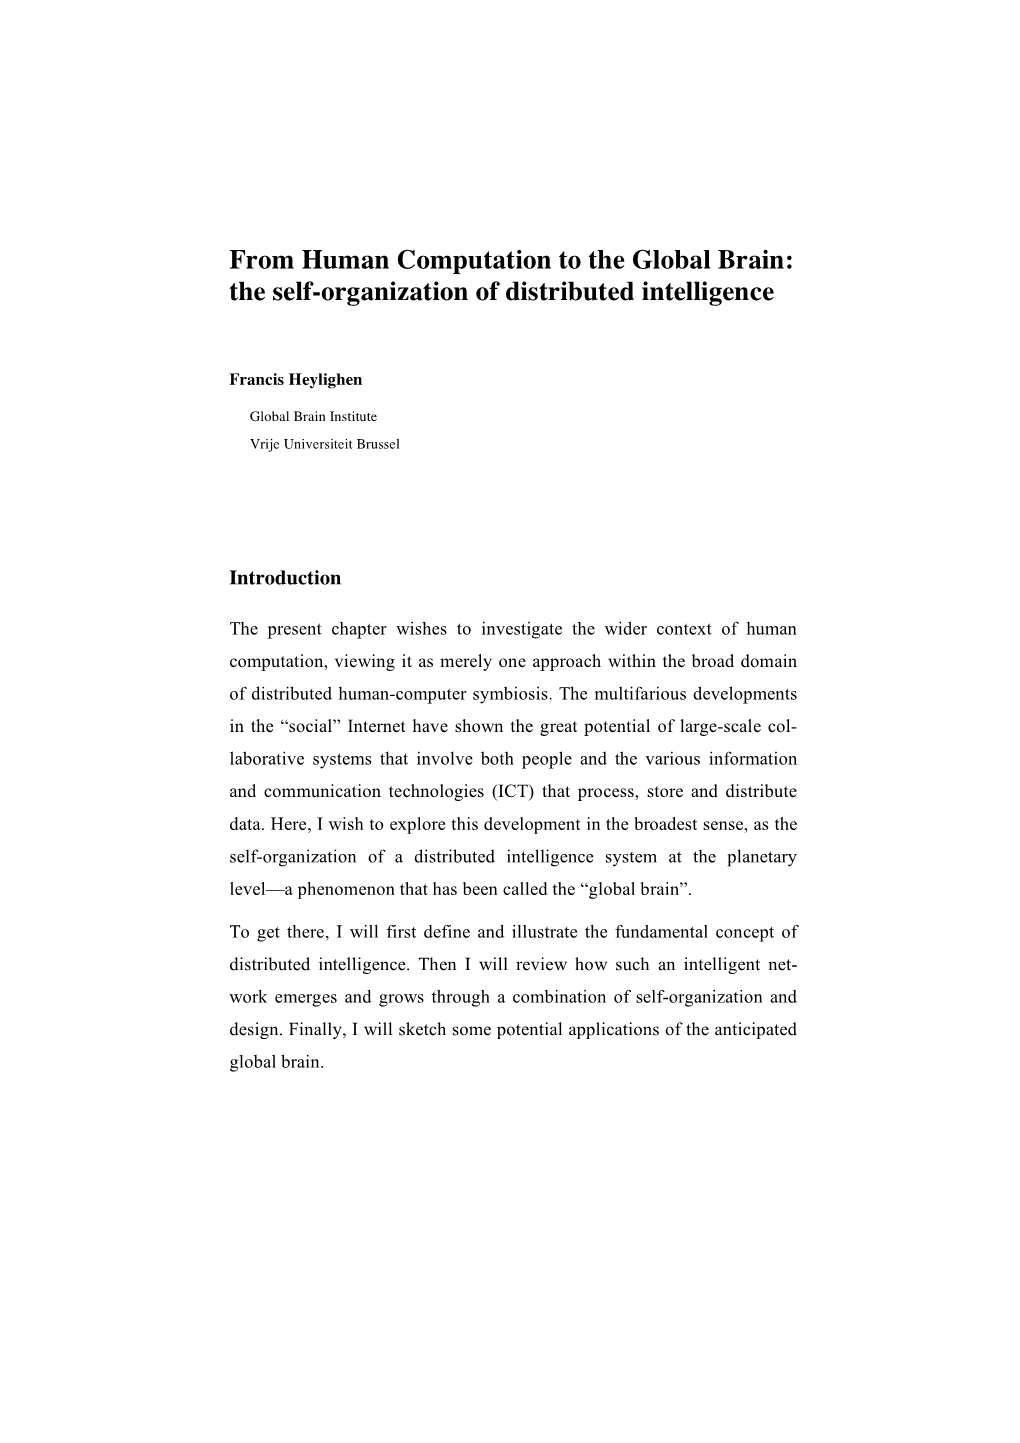 GB-Human Computation Handbook